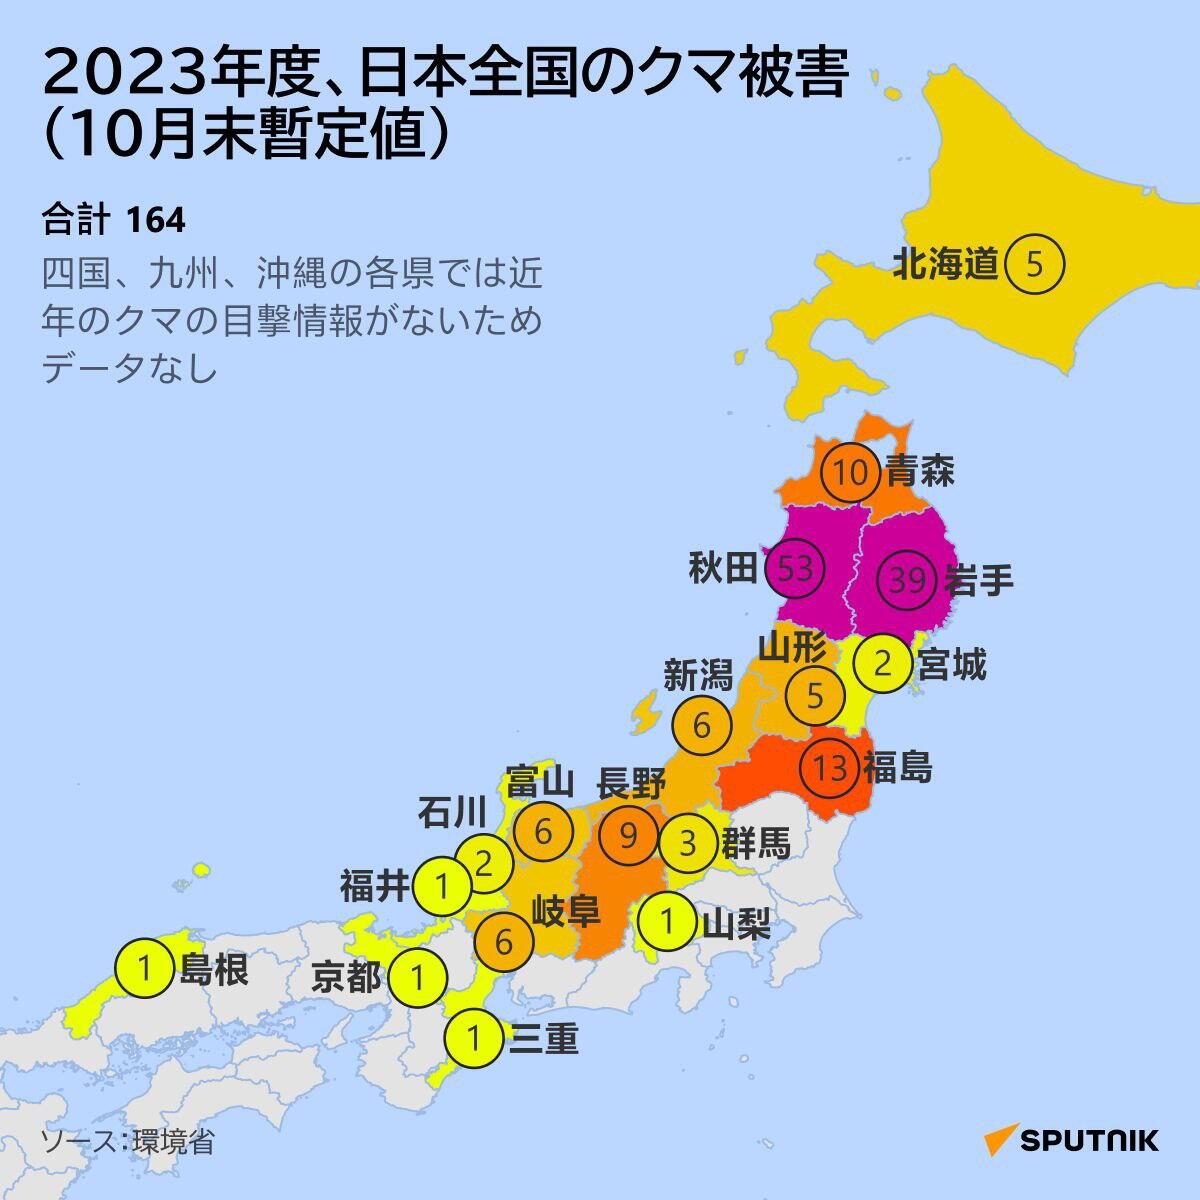 2023年の日本全国クマ襲撃事件 - Sputnik 日本